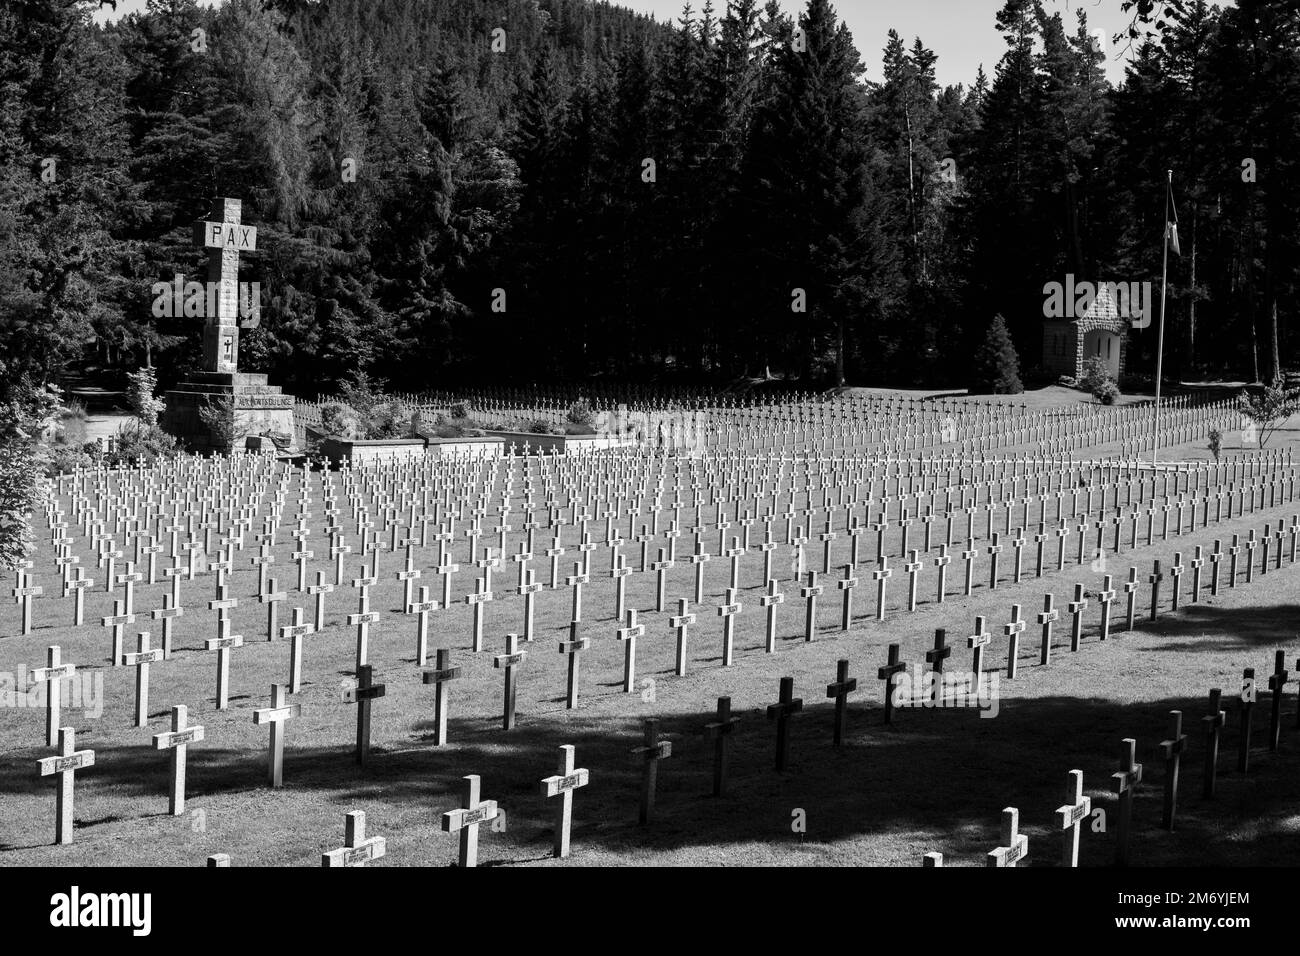 WW2 cimetière.lignes de croix blanches au cimetière de la Seconde Guerre mondiale en France. Mémorial de guerre français. Grand cimetière plein soleil Banque D'Images